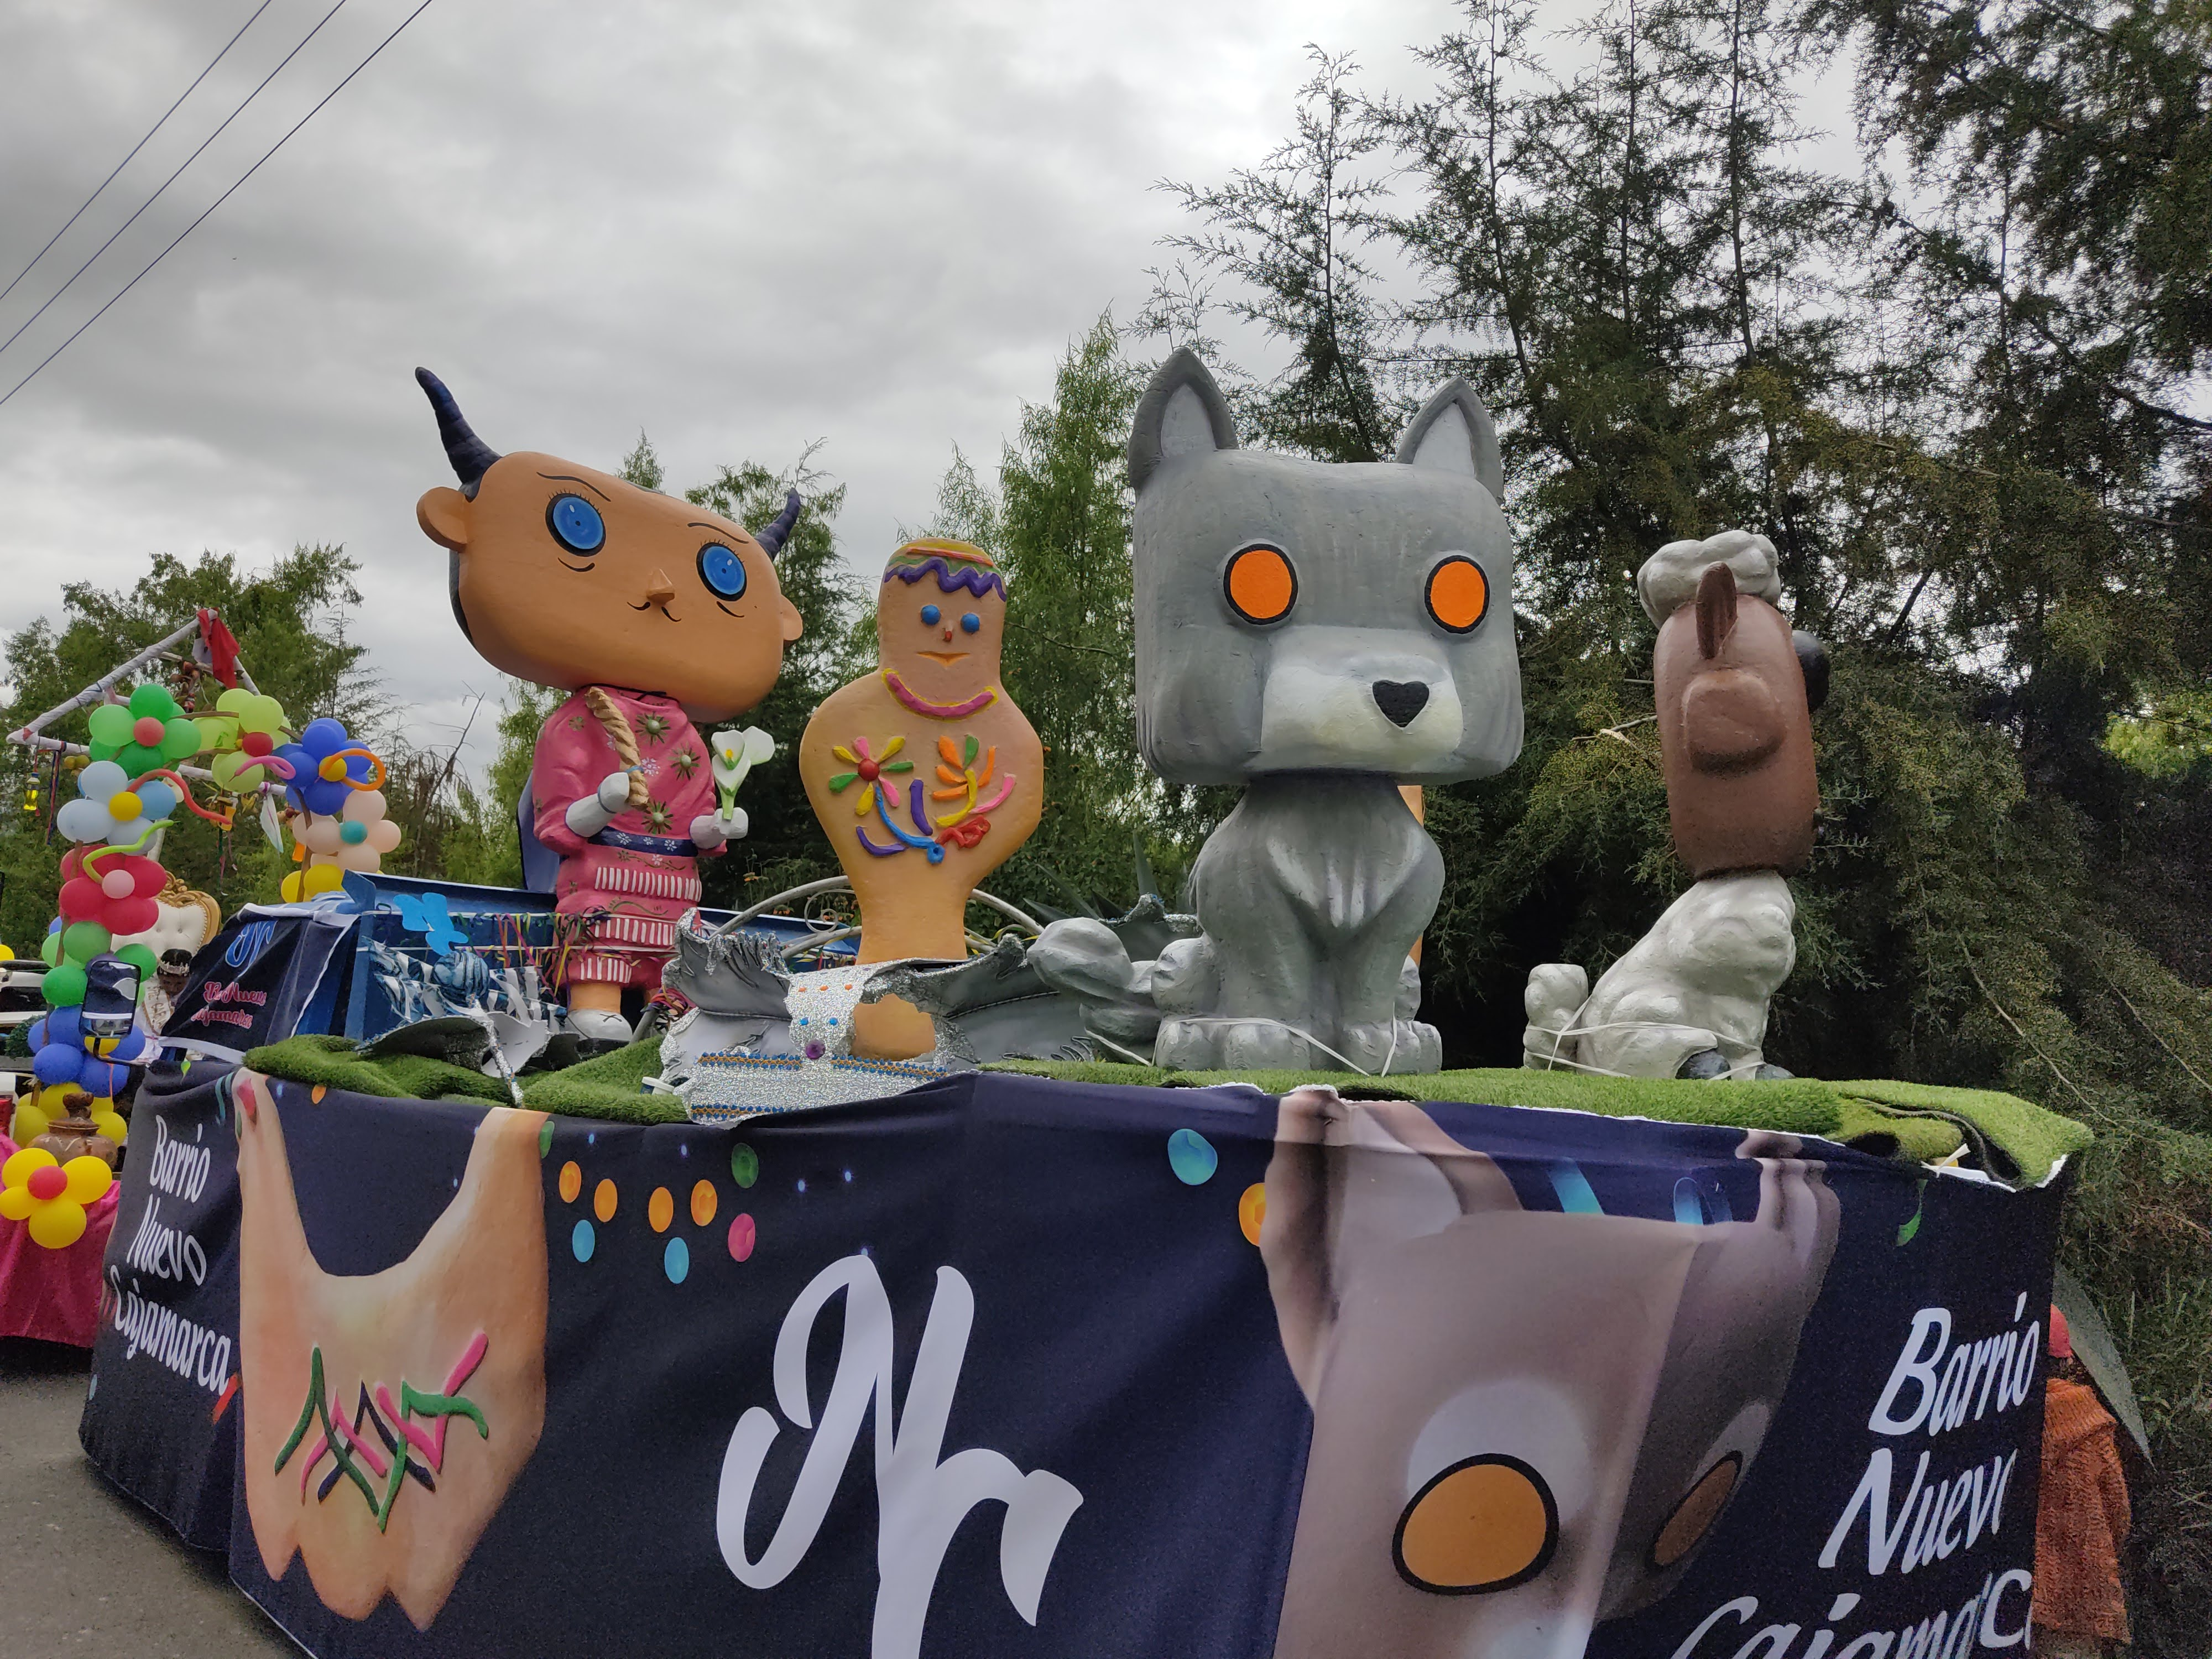 Carnaval de Cajamarca: corso de los carros alegóricos